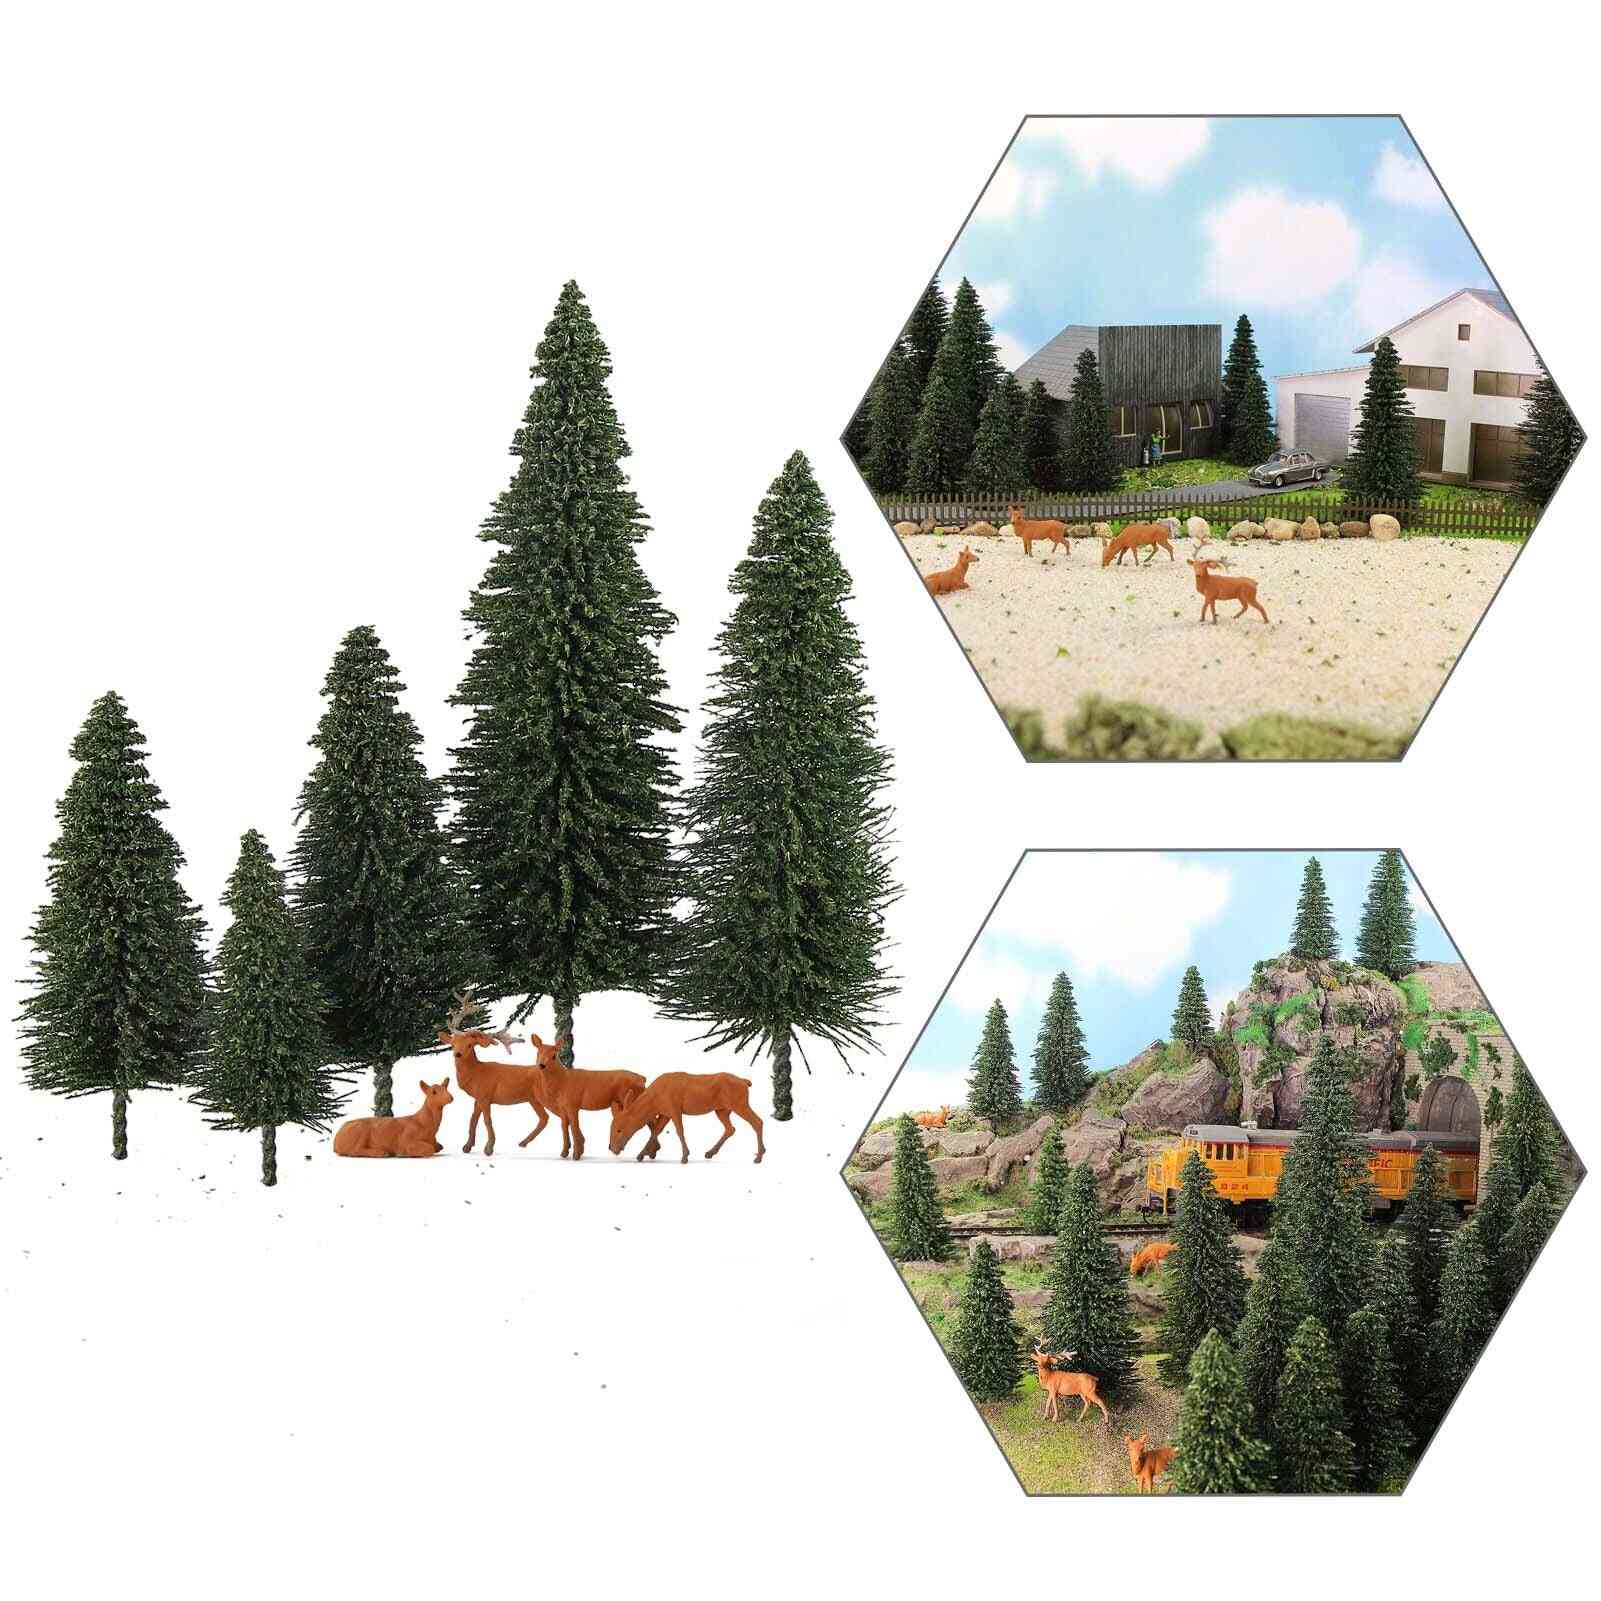 Fyrretræer grønne fyrretræer skala 1:87 model elghjorte, jernbanelayout minilandskab